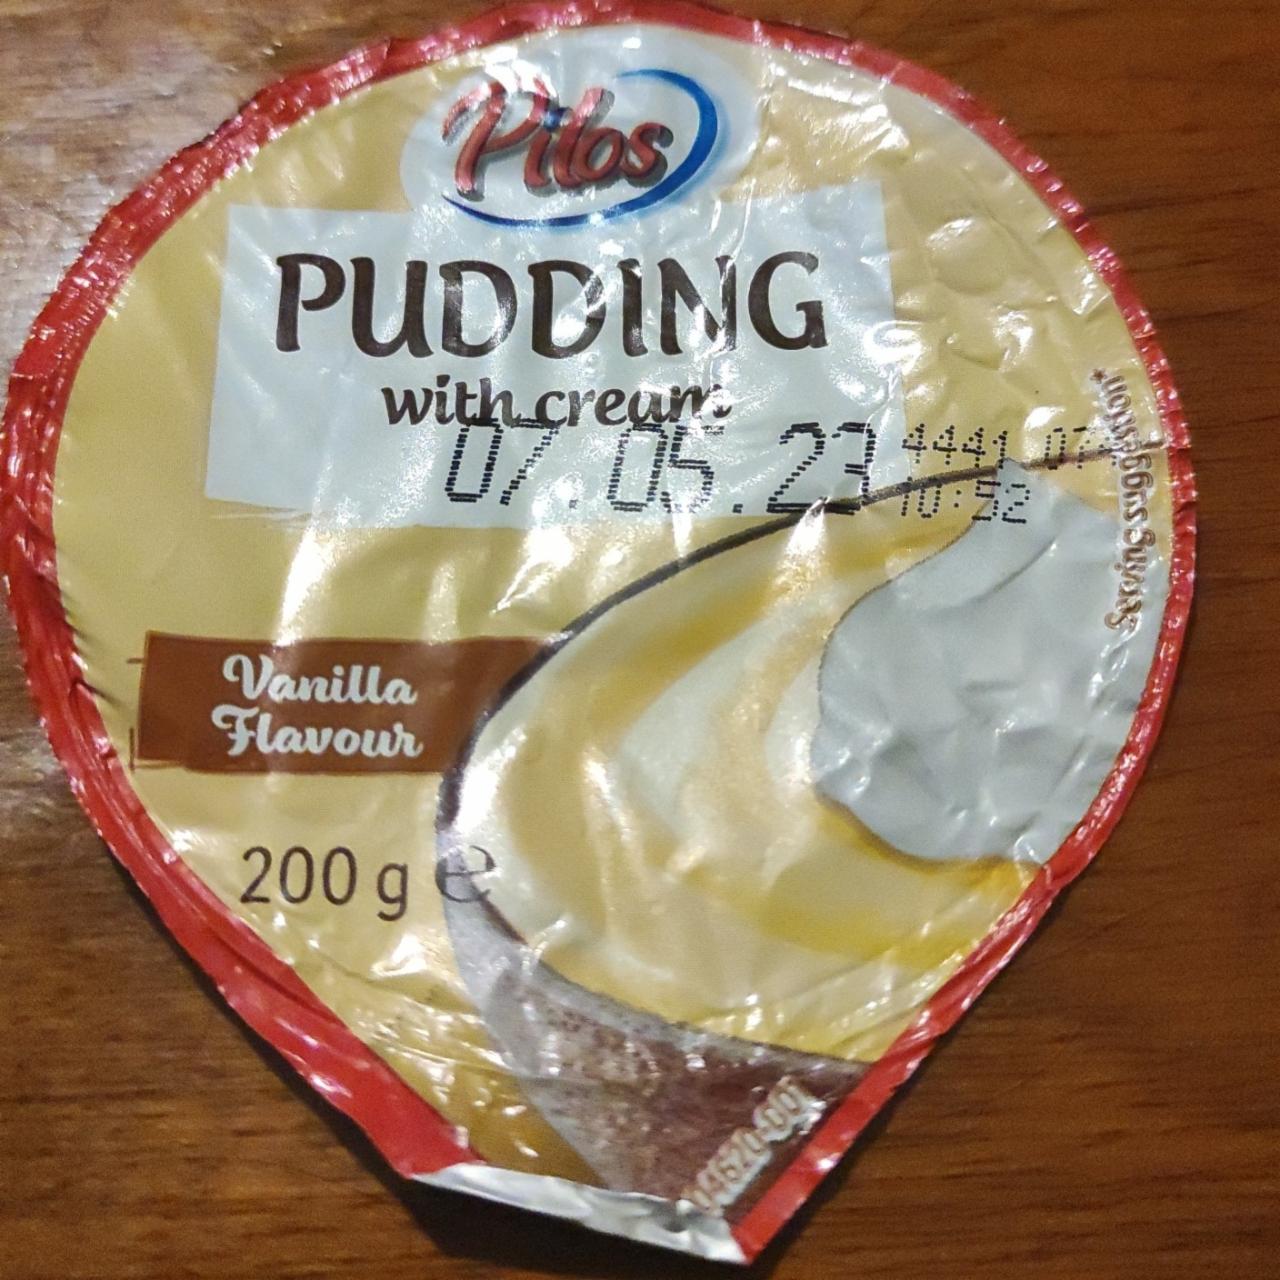 Fotografie - Pudding with cream Vanilla Flavour Pilos